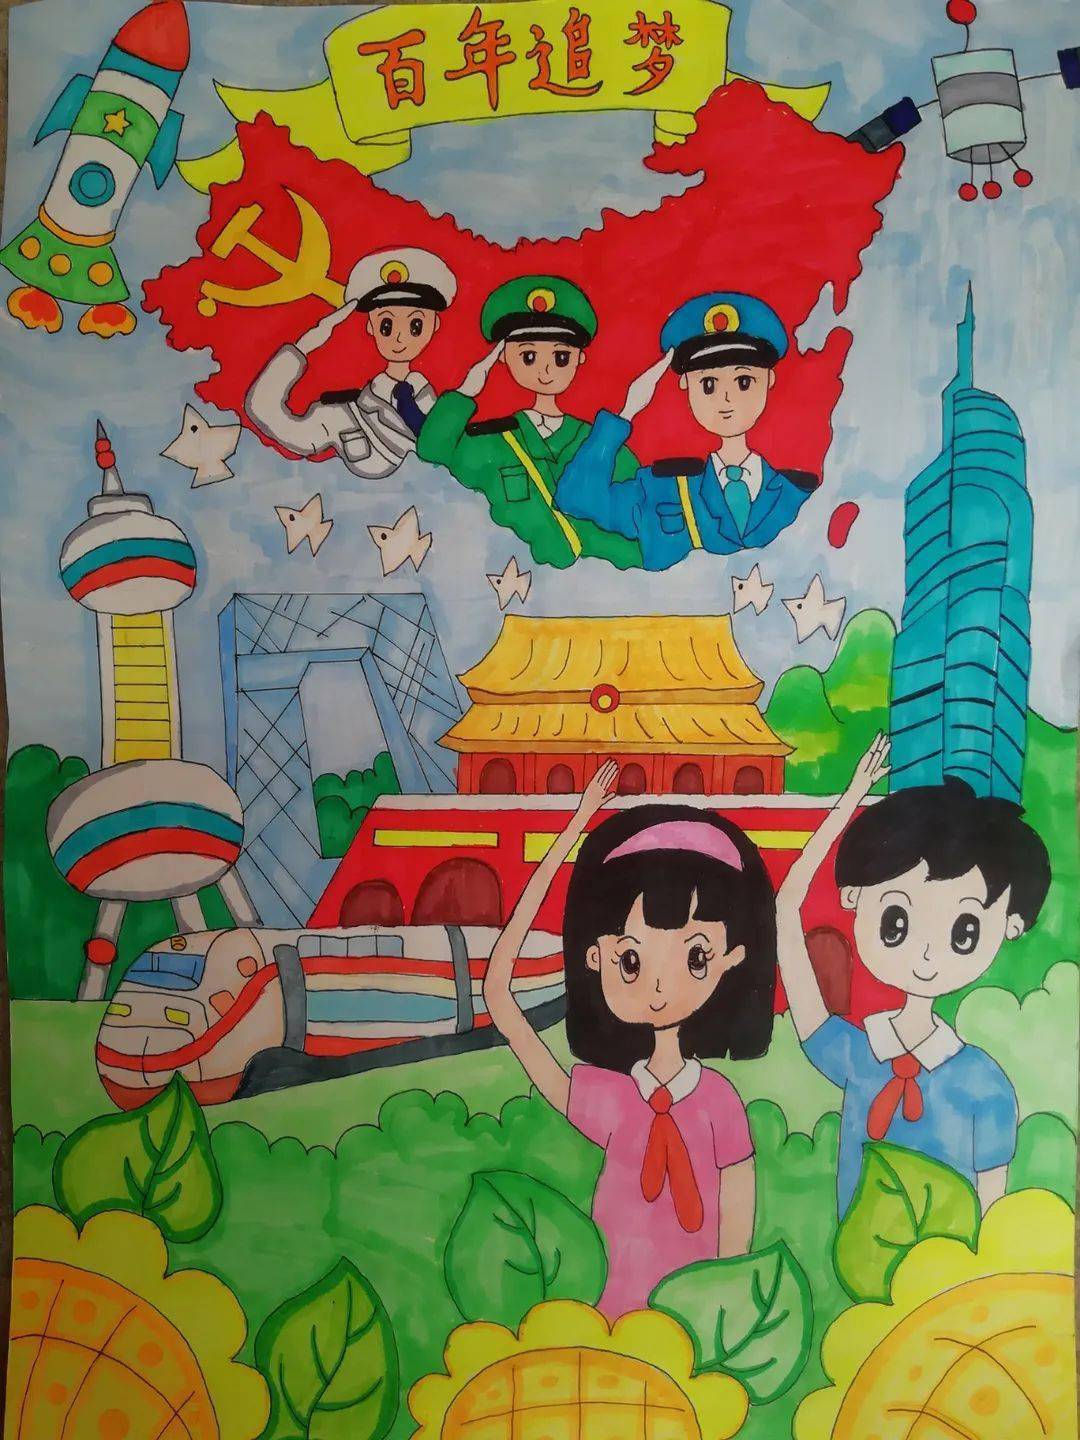 幸福生活节节高——百色市少年儿童献礼中国共产党建党100周年儿童画